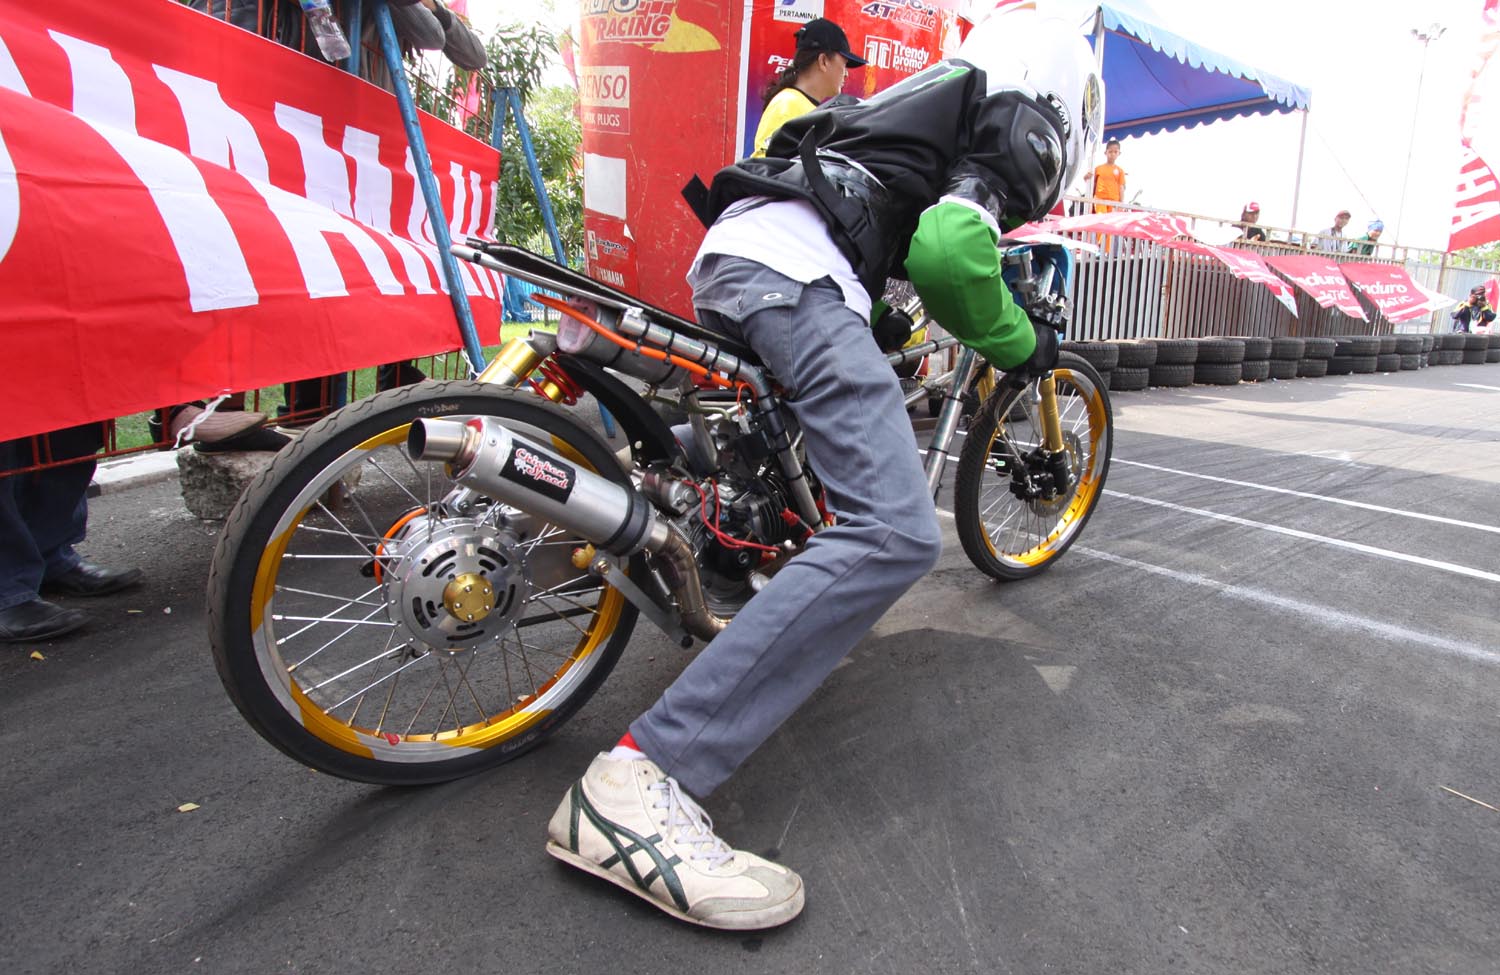 99 Gambar Motor Drag Bike 2014 Terlengkap Kewak Motor